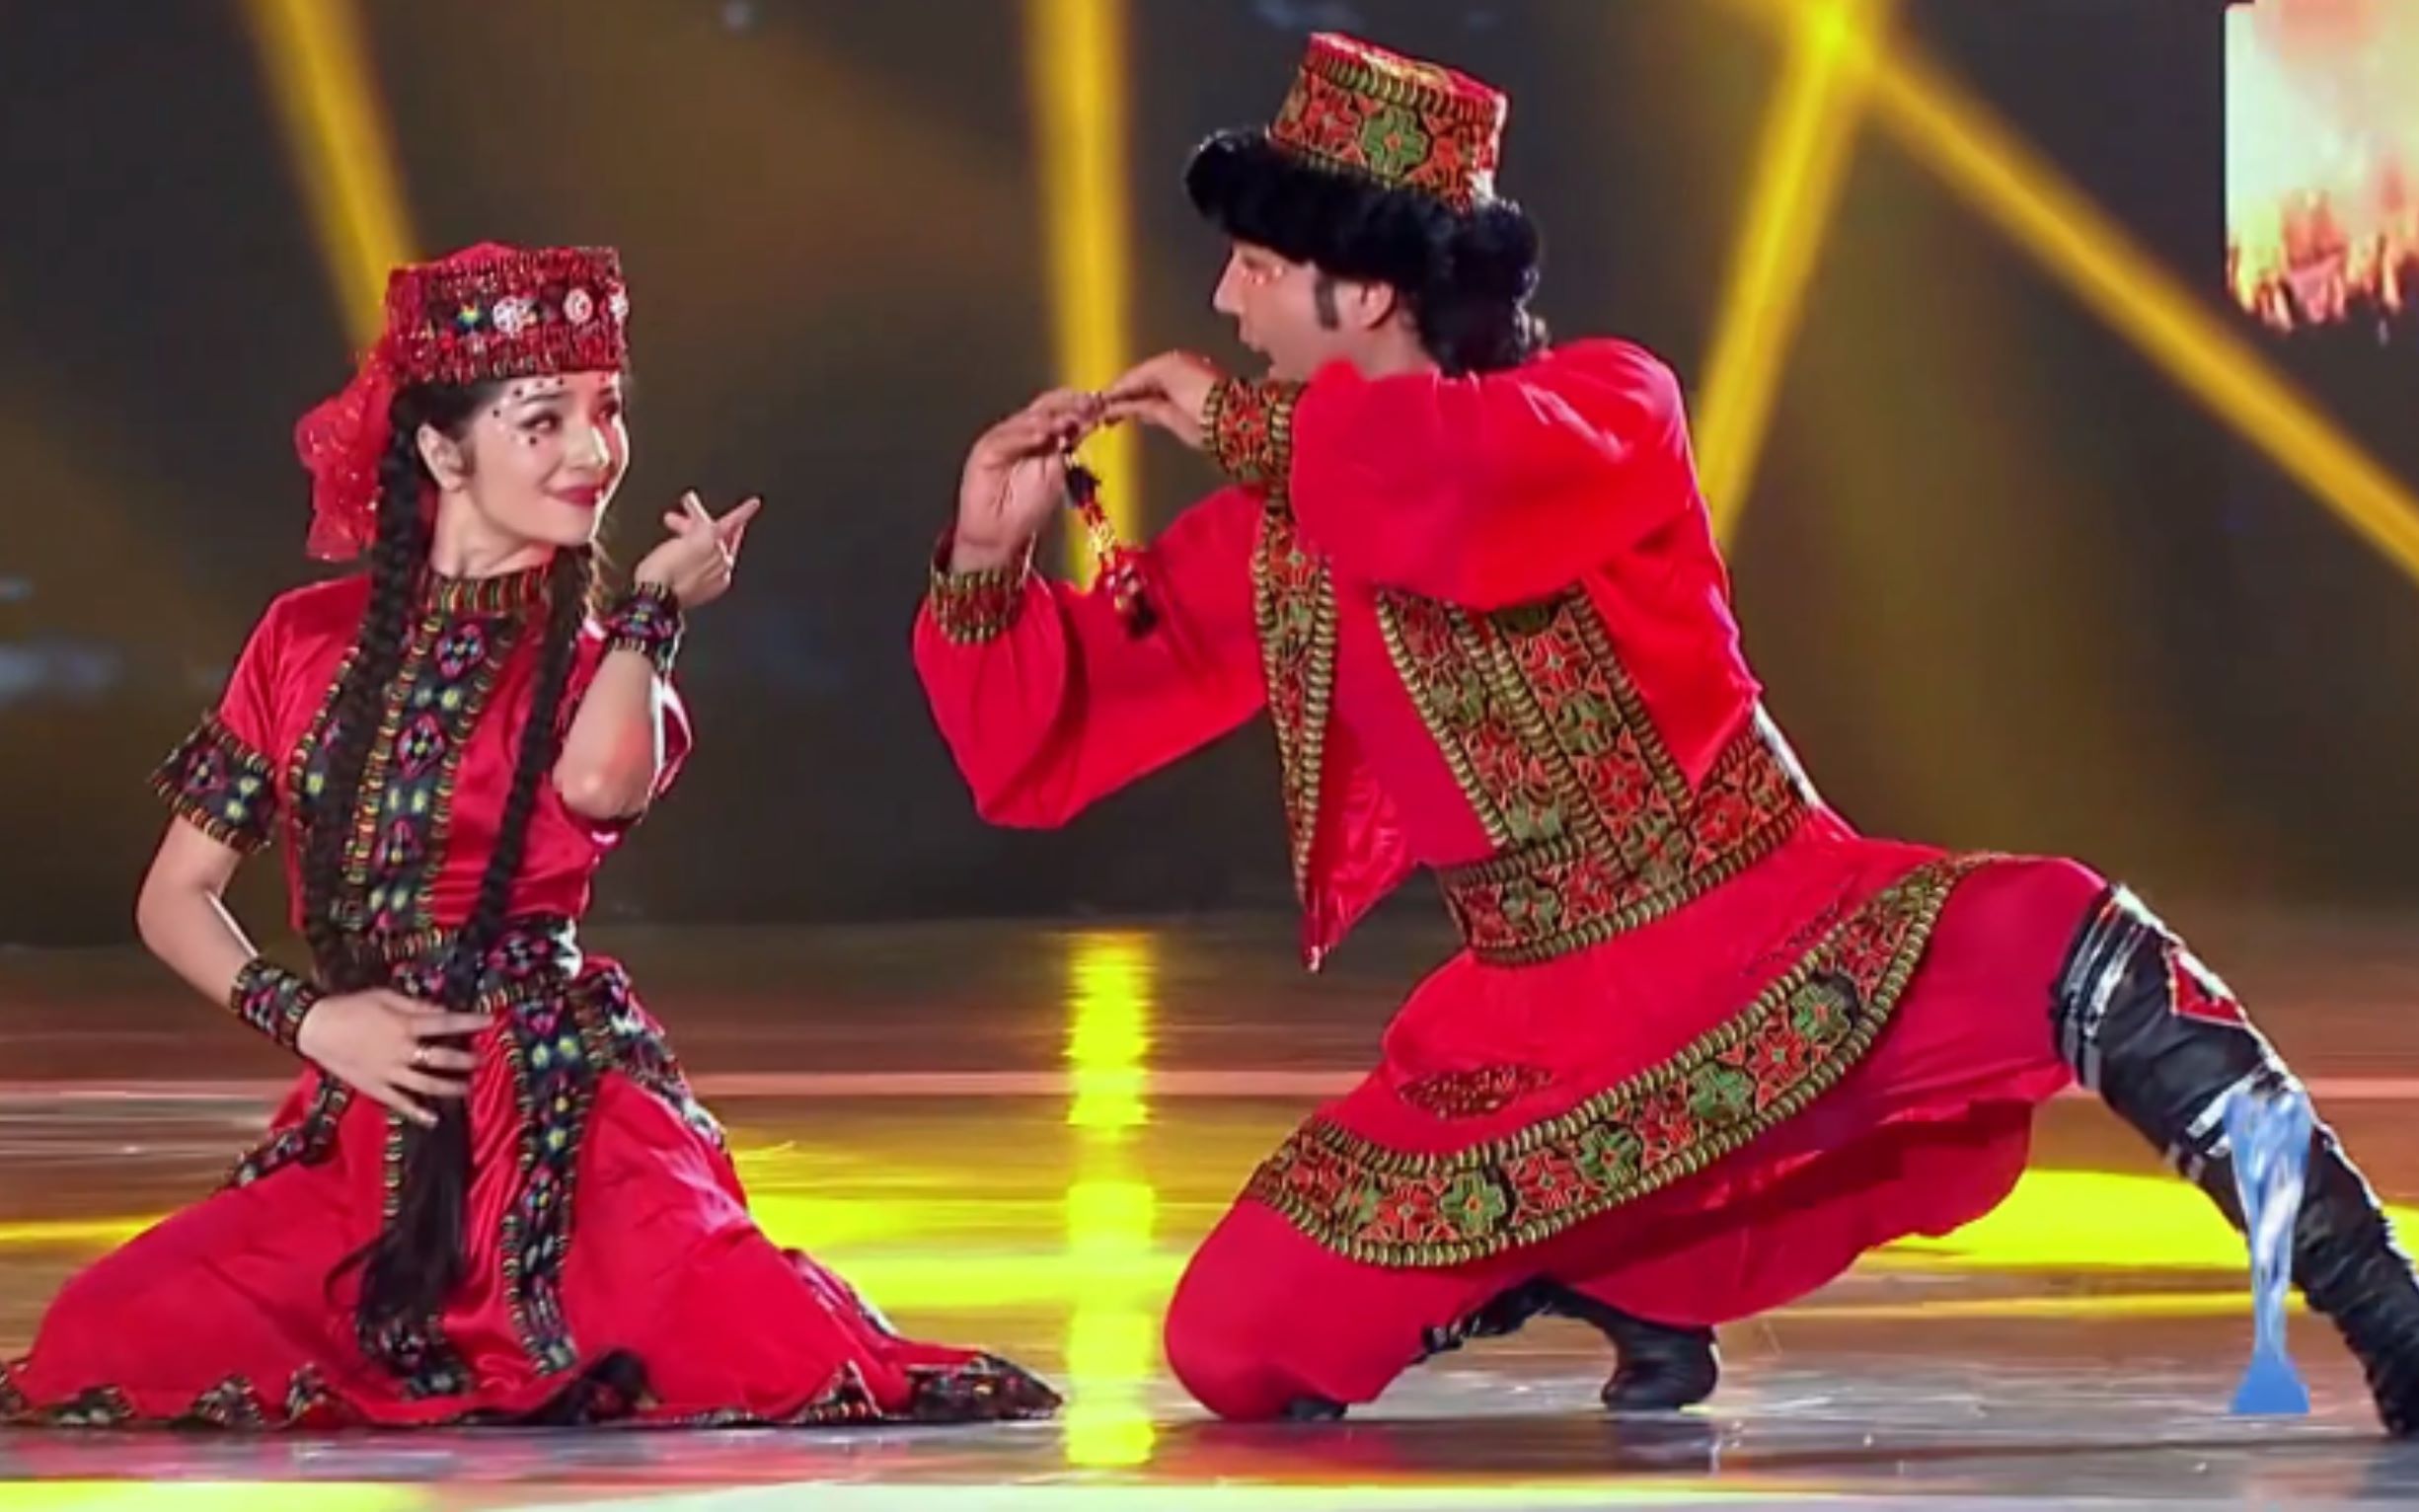 【中国好舞蹈《帕米尔之情 塔吉克族舞蹈:古丽米娜&买买提江